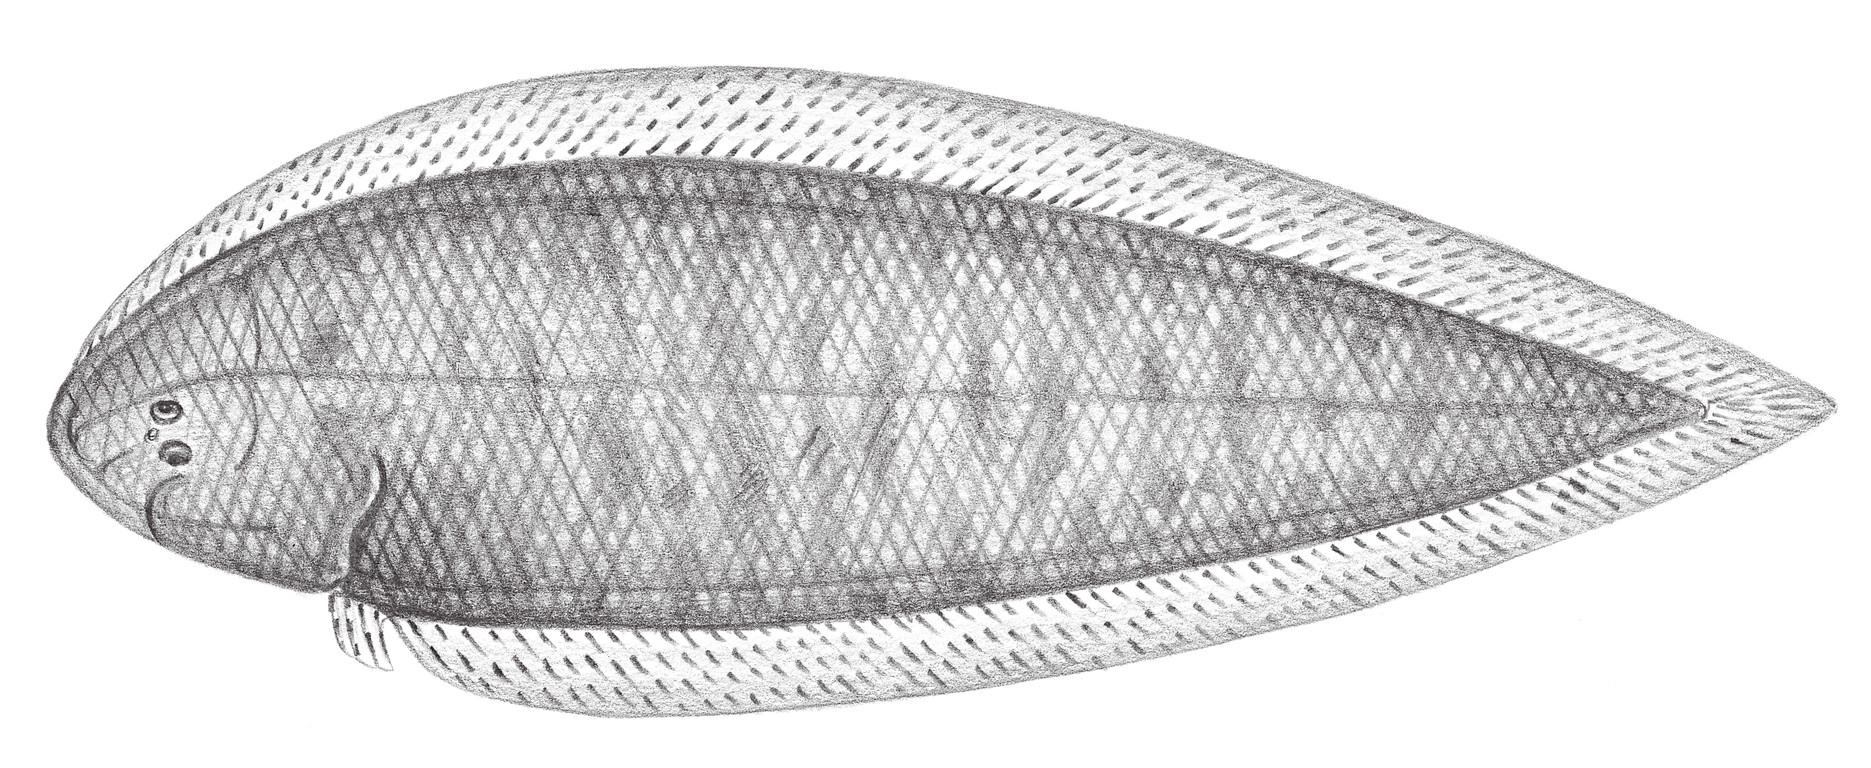 2458.	單孔舌鰨 Cynoglossus itinus (Snyder, 1909)